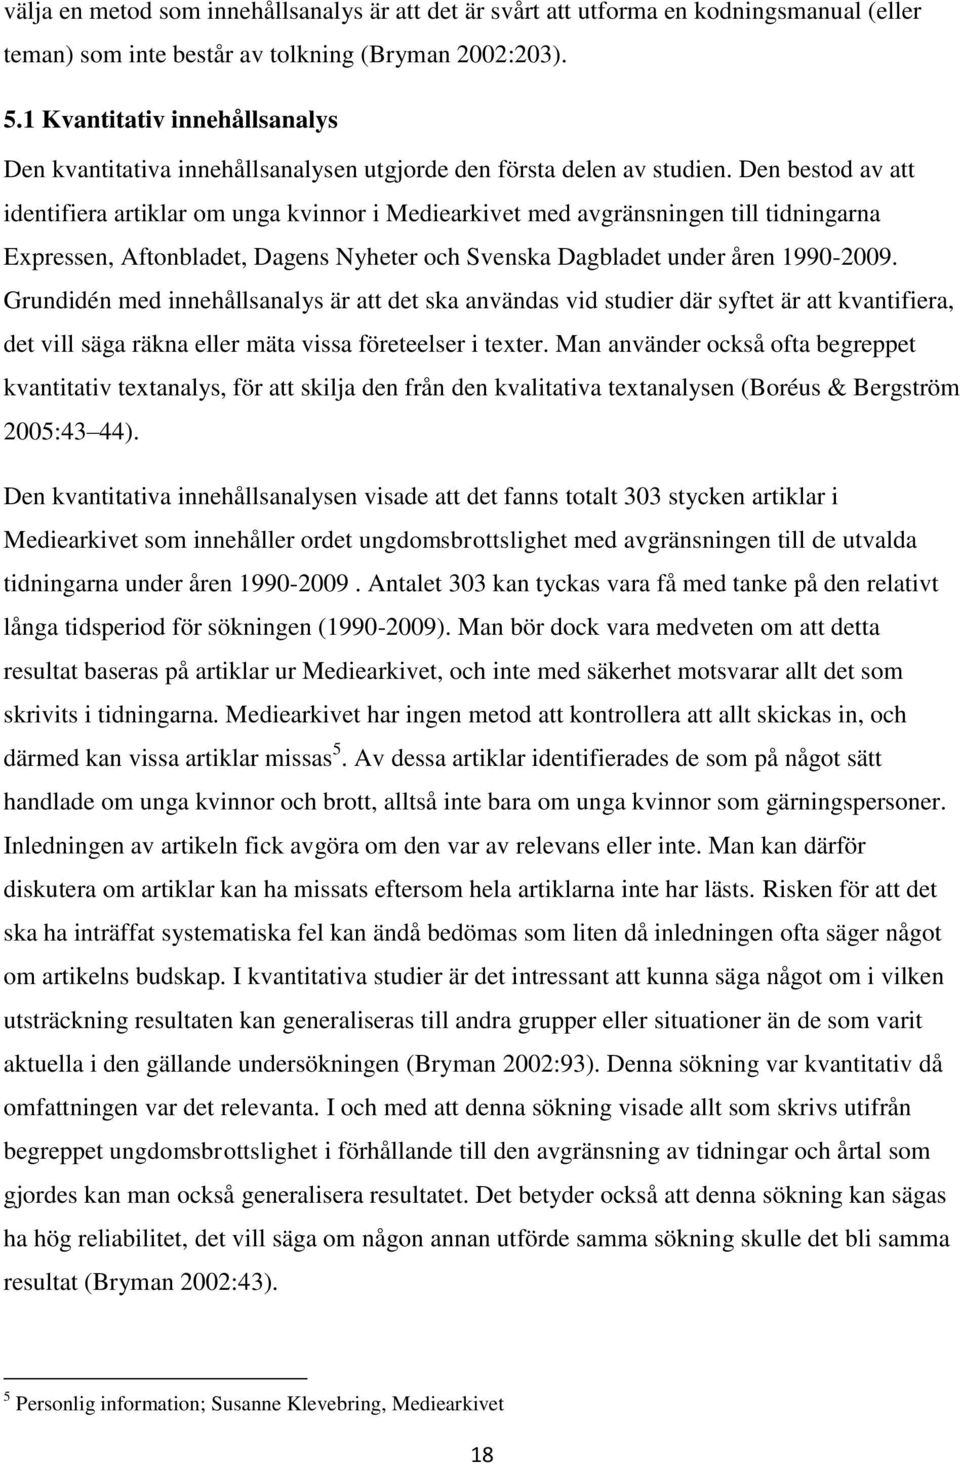 Den bestod av att identifiera artiklar om unga kvinnor i Mediearkivet med avgränsningen till tidningarna Expressen, Aftonbladet, Dagens Nyheter och Svenska Dagbladet under åren 1990-2009.